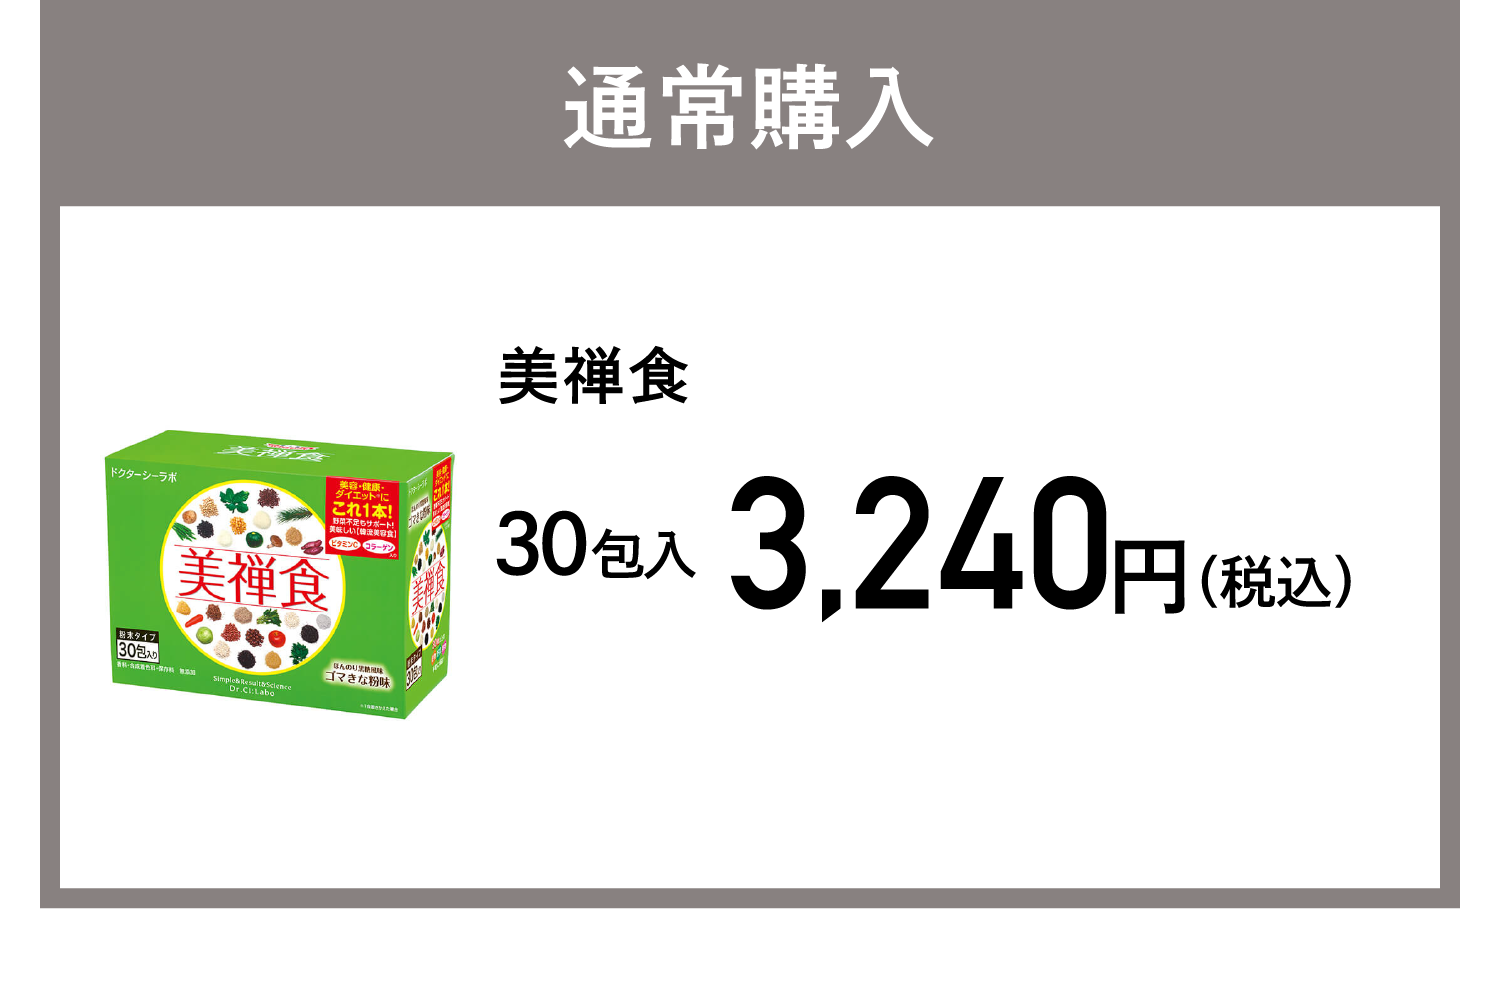 通常購入 美禅食 3,240円(税込)